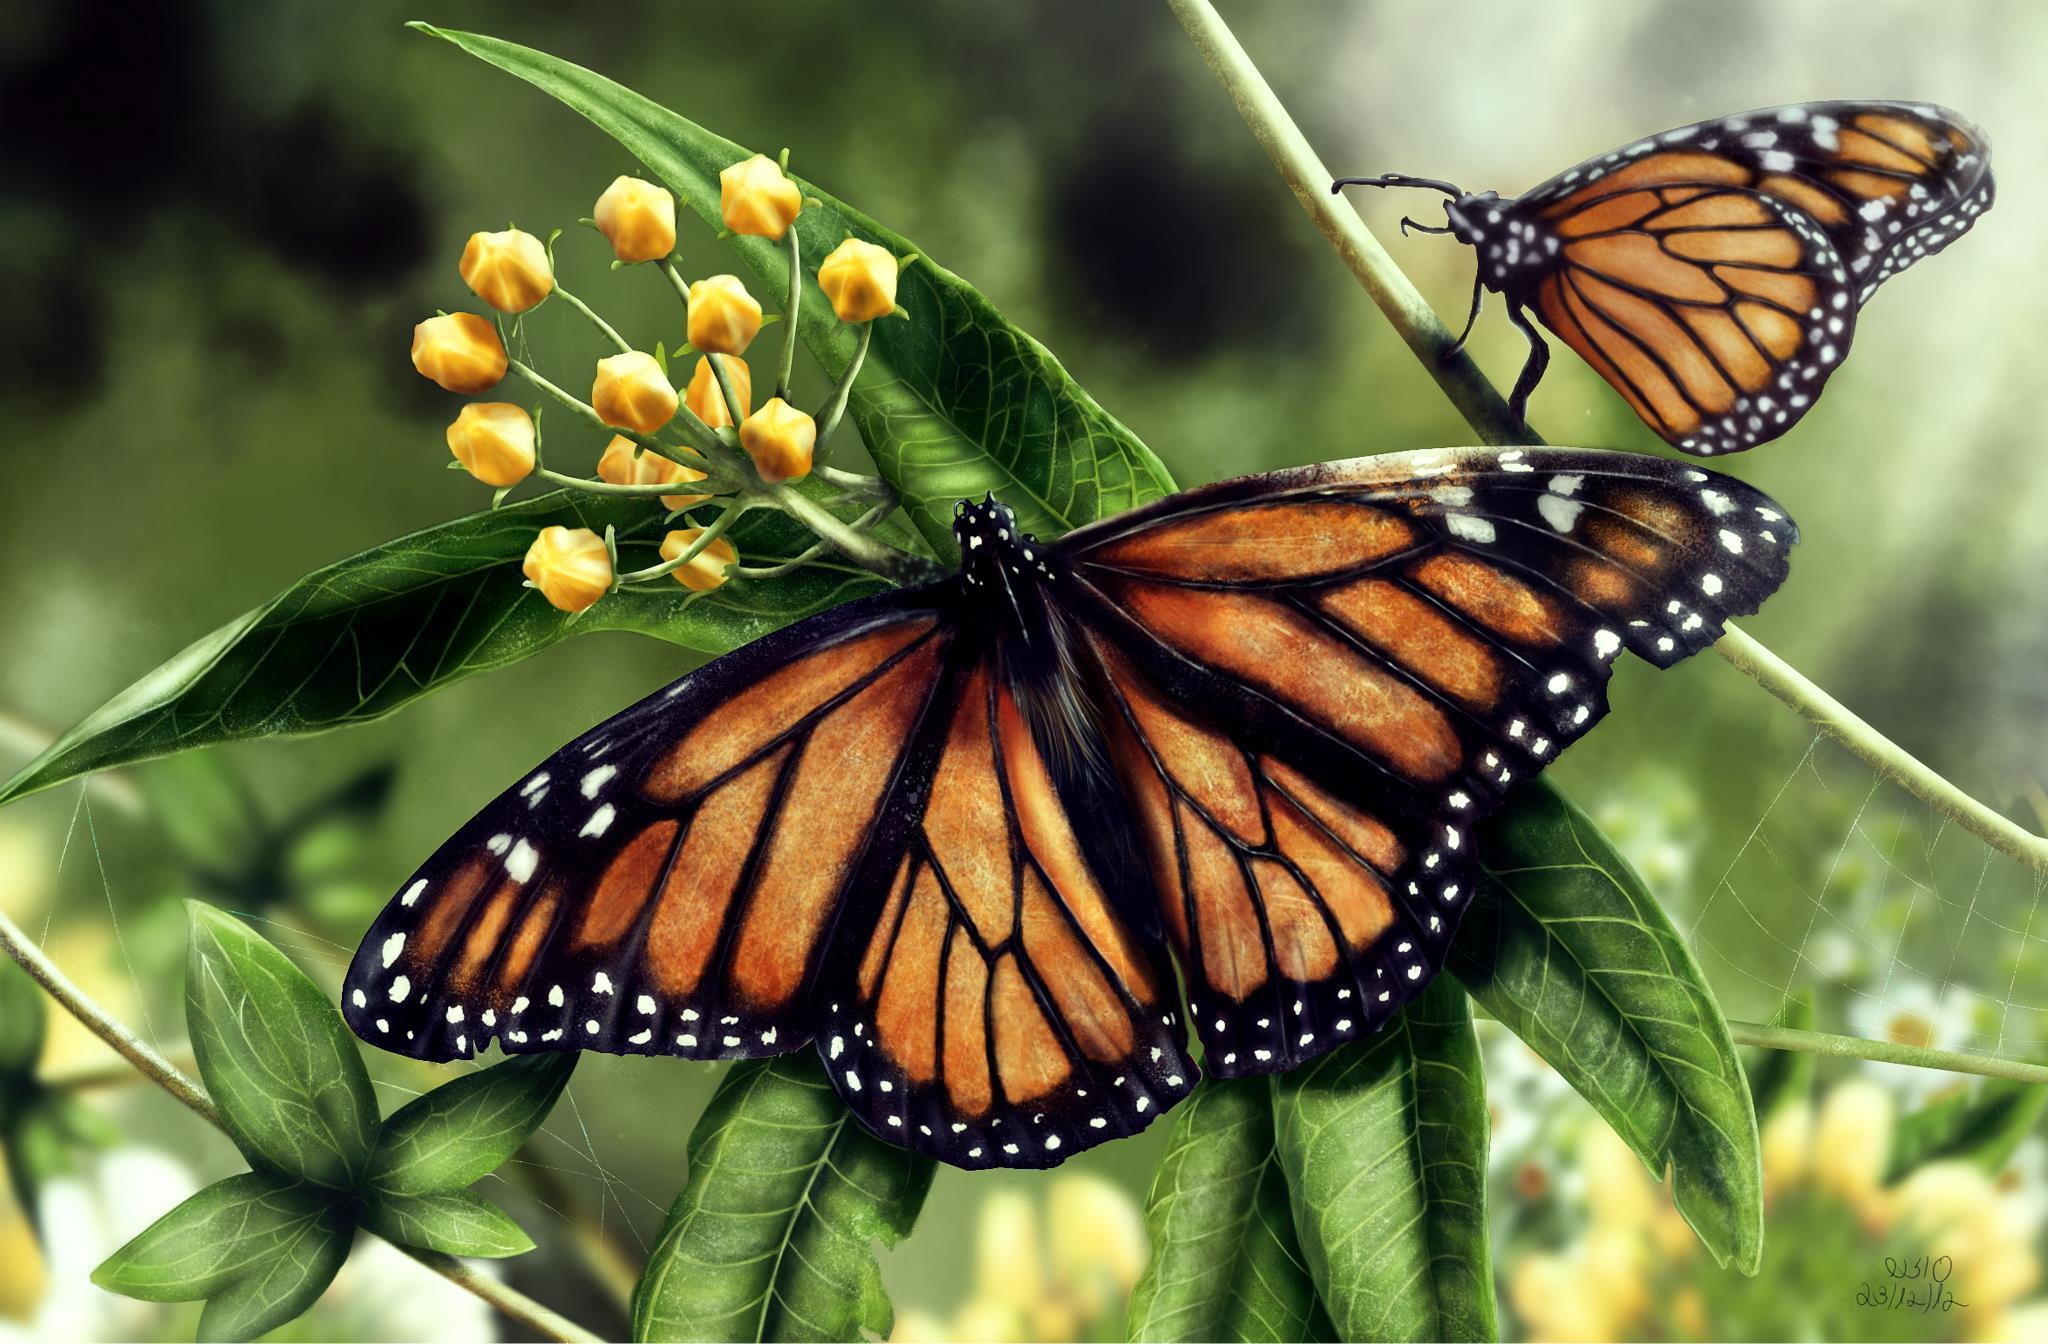 Fotos von Monarchfalter Insekten Schmetterlinge Zwei ein Tier Schmetterling 2 Tiere